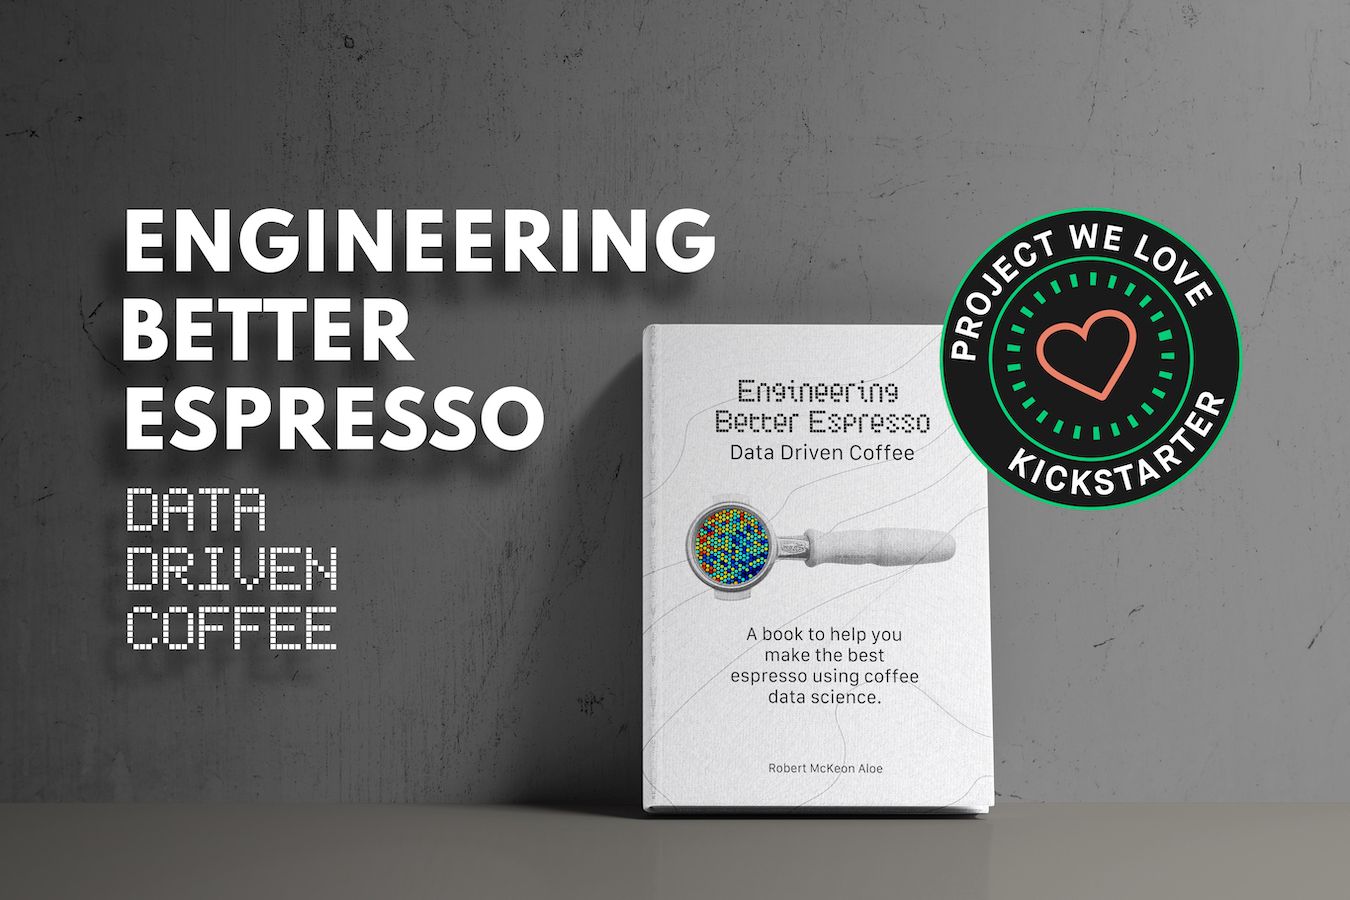 Robert McKeon Aloe's book:Engineering Better Espresso: Data Driven Coffee